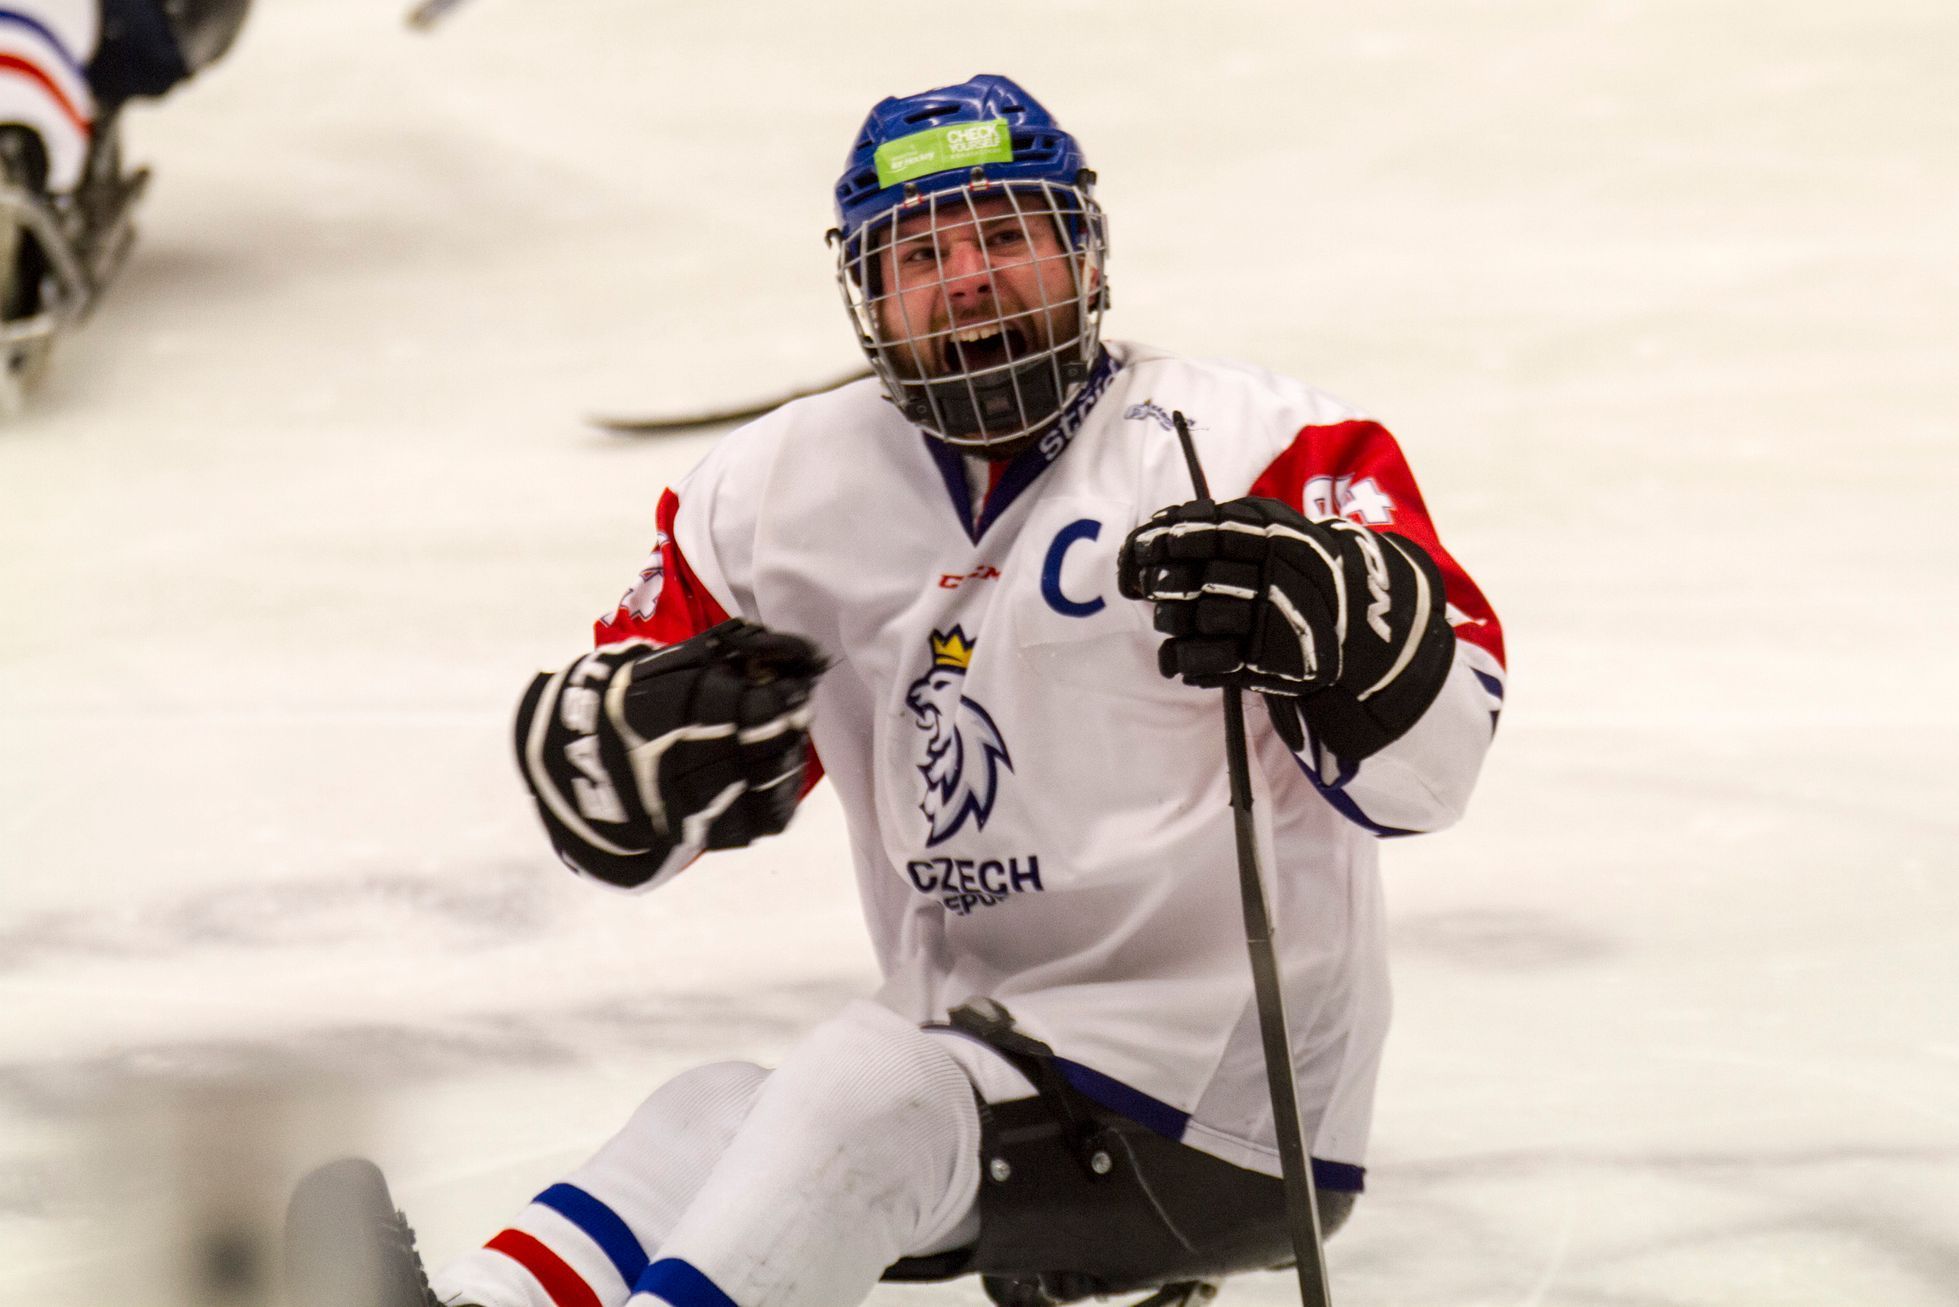 Česko - Norsko, čtvrtfinále MS v parahokeji 2019